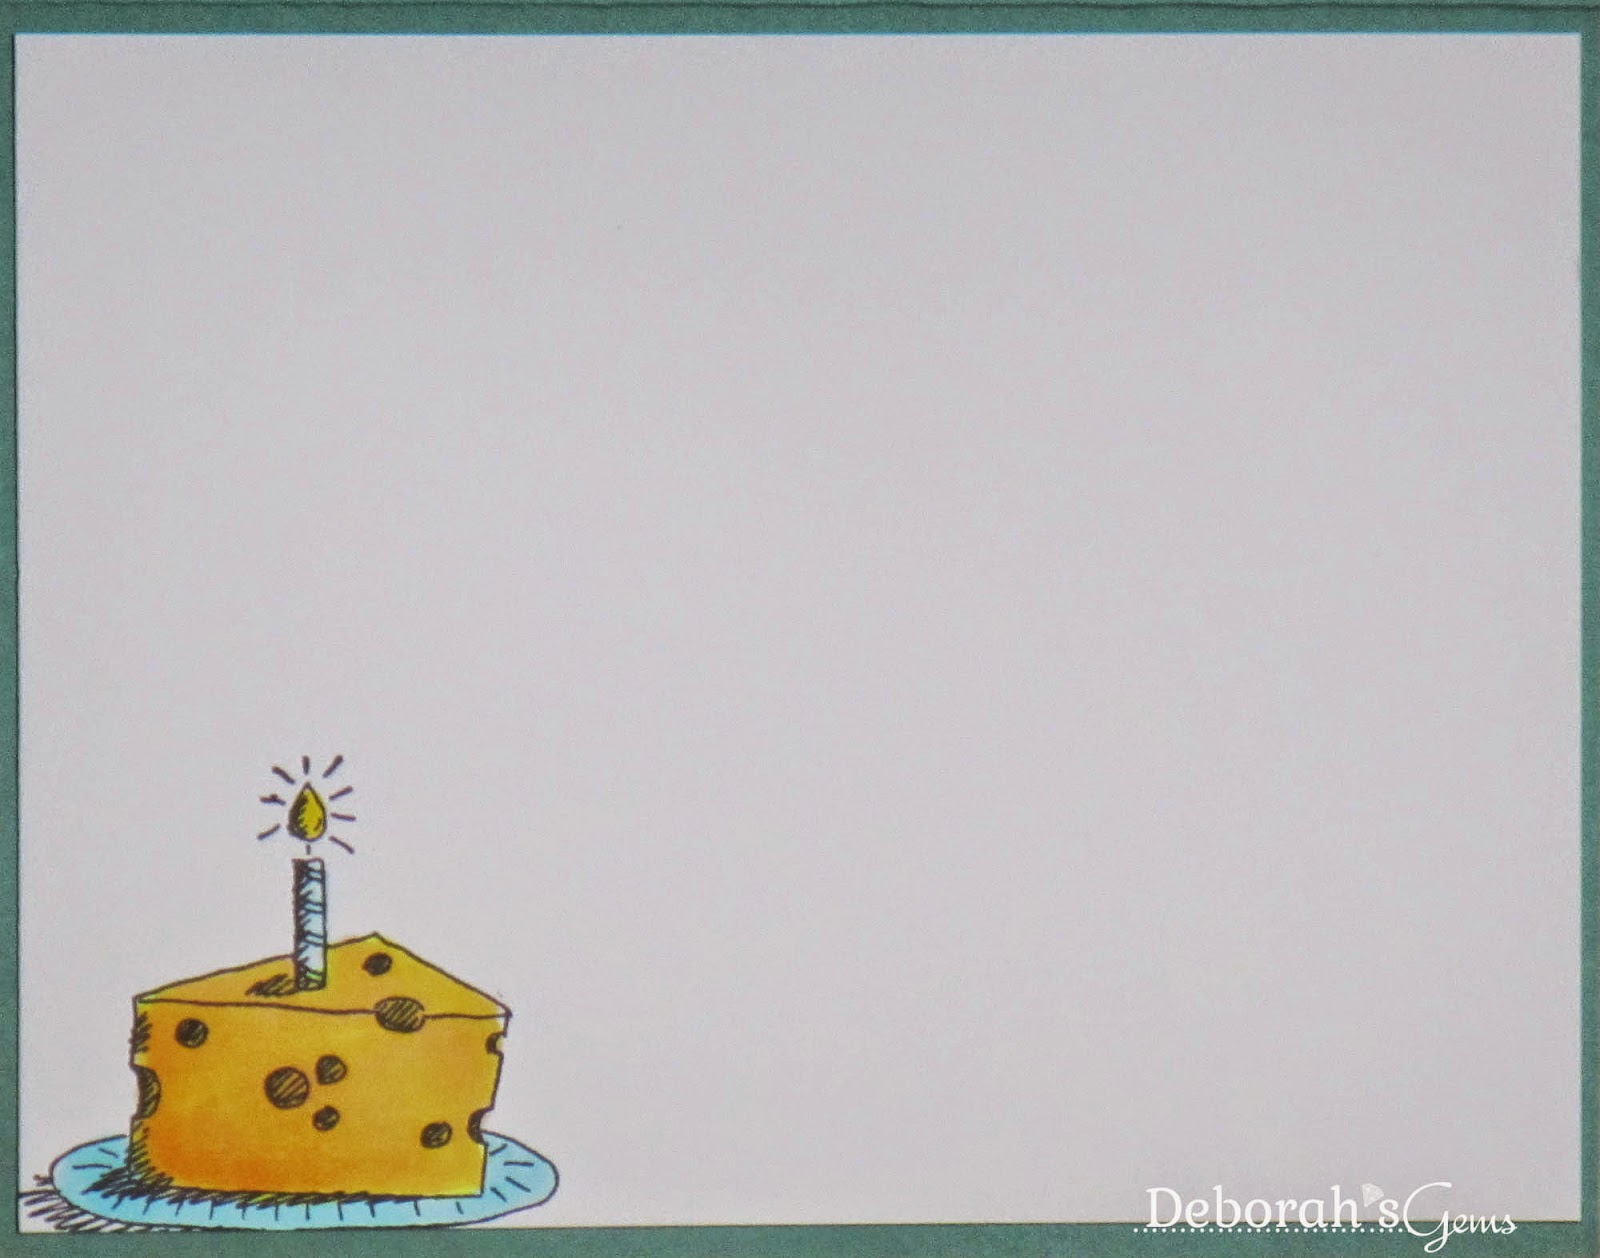 Cheese Card inside - photo by Deborah Frings - Deborah's Gems